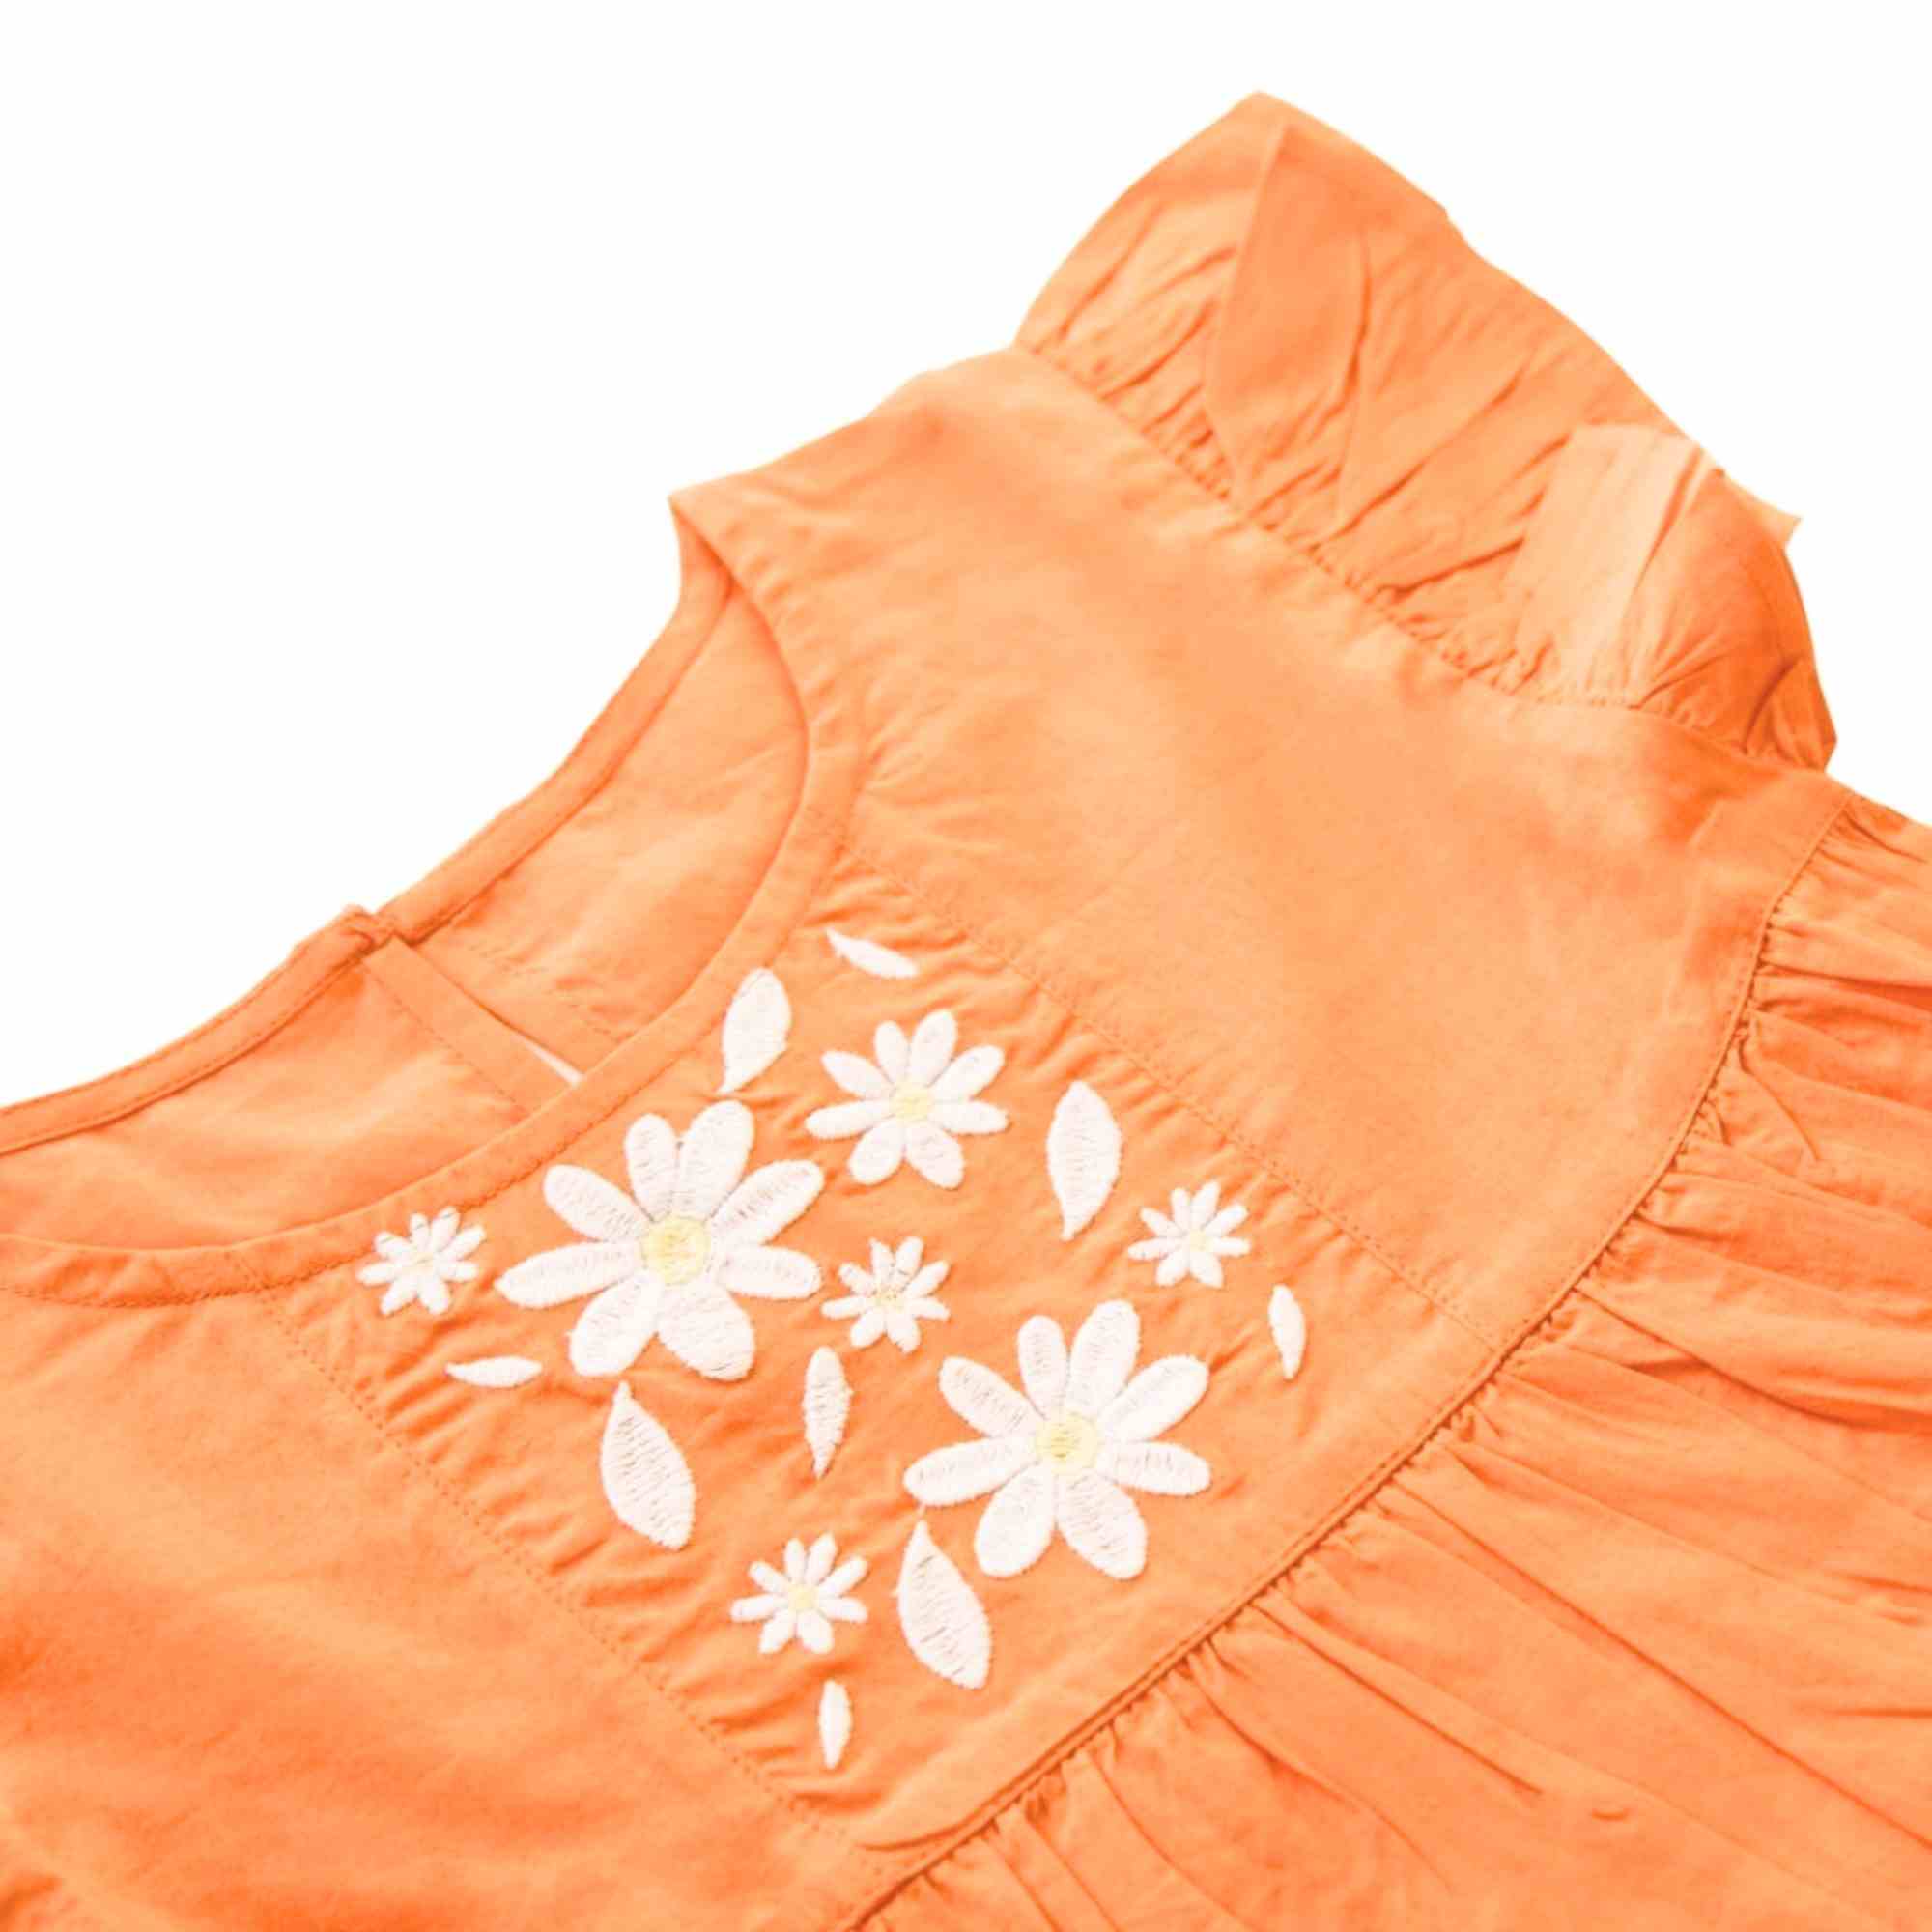 Flutter Sleeve Embroidered Dress - Orange